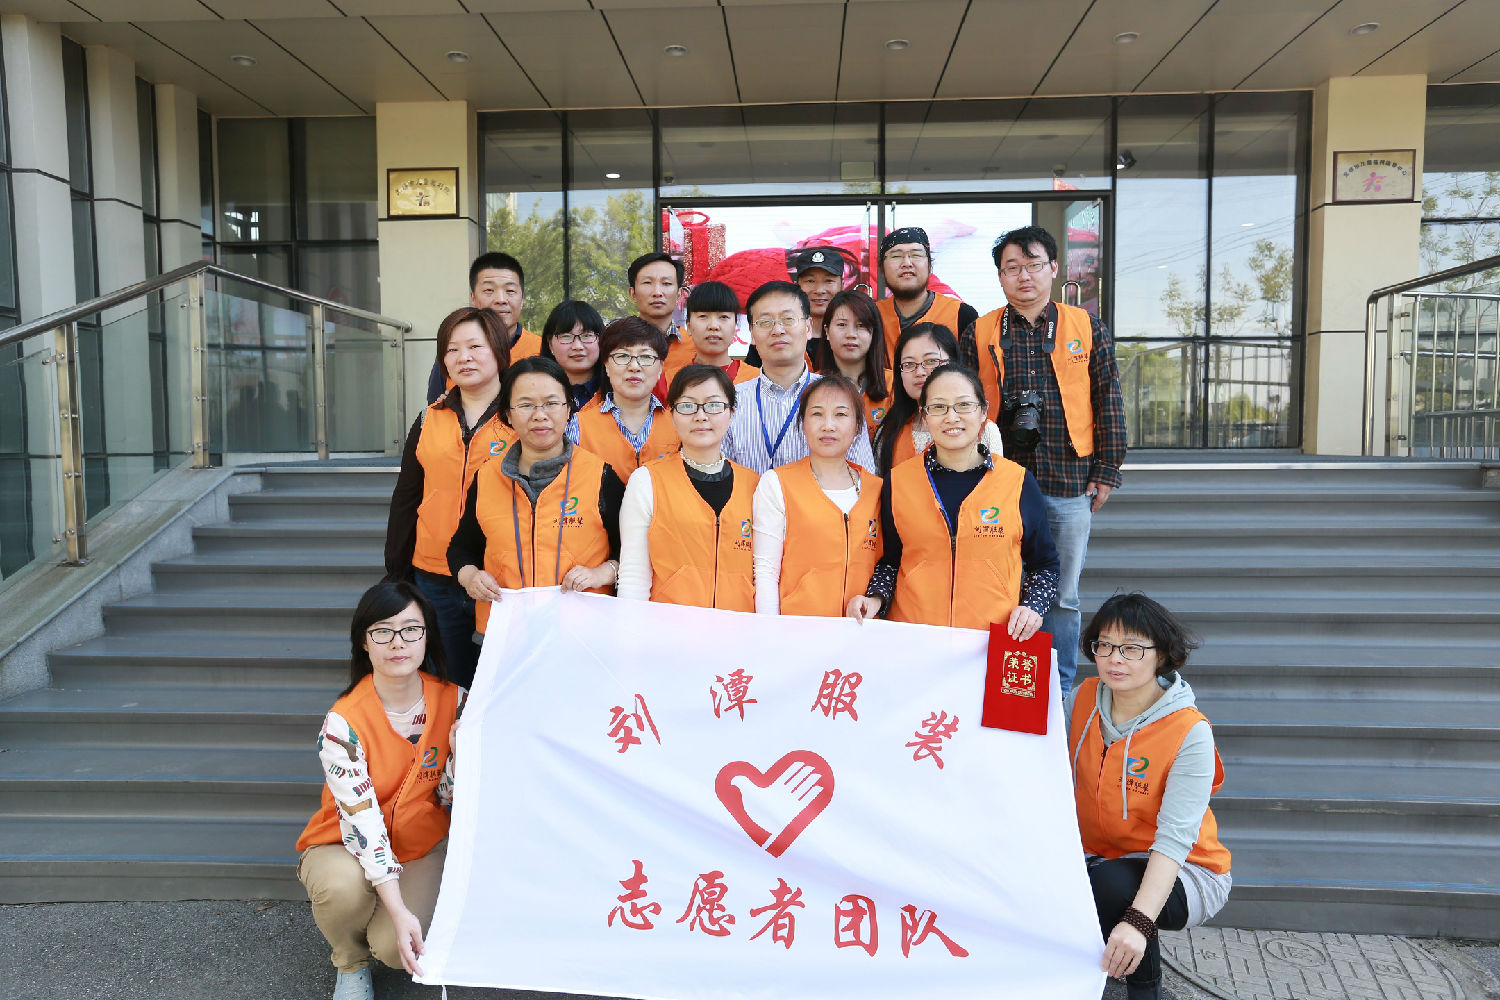 刘潭服装志愿者团队